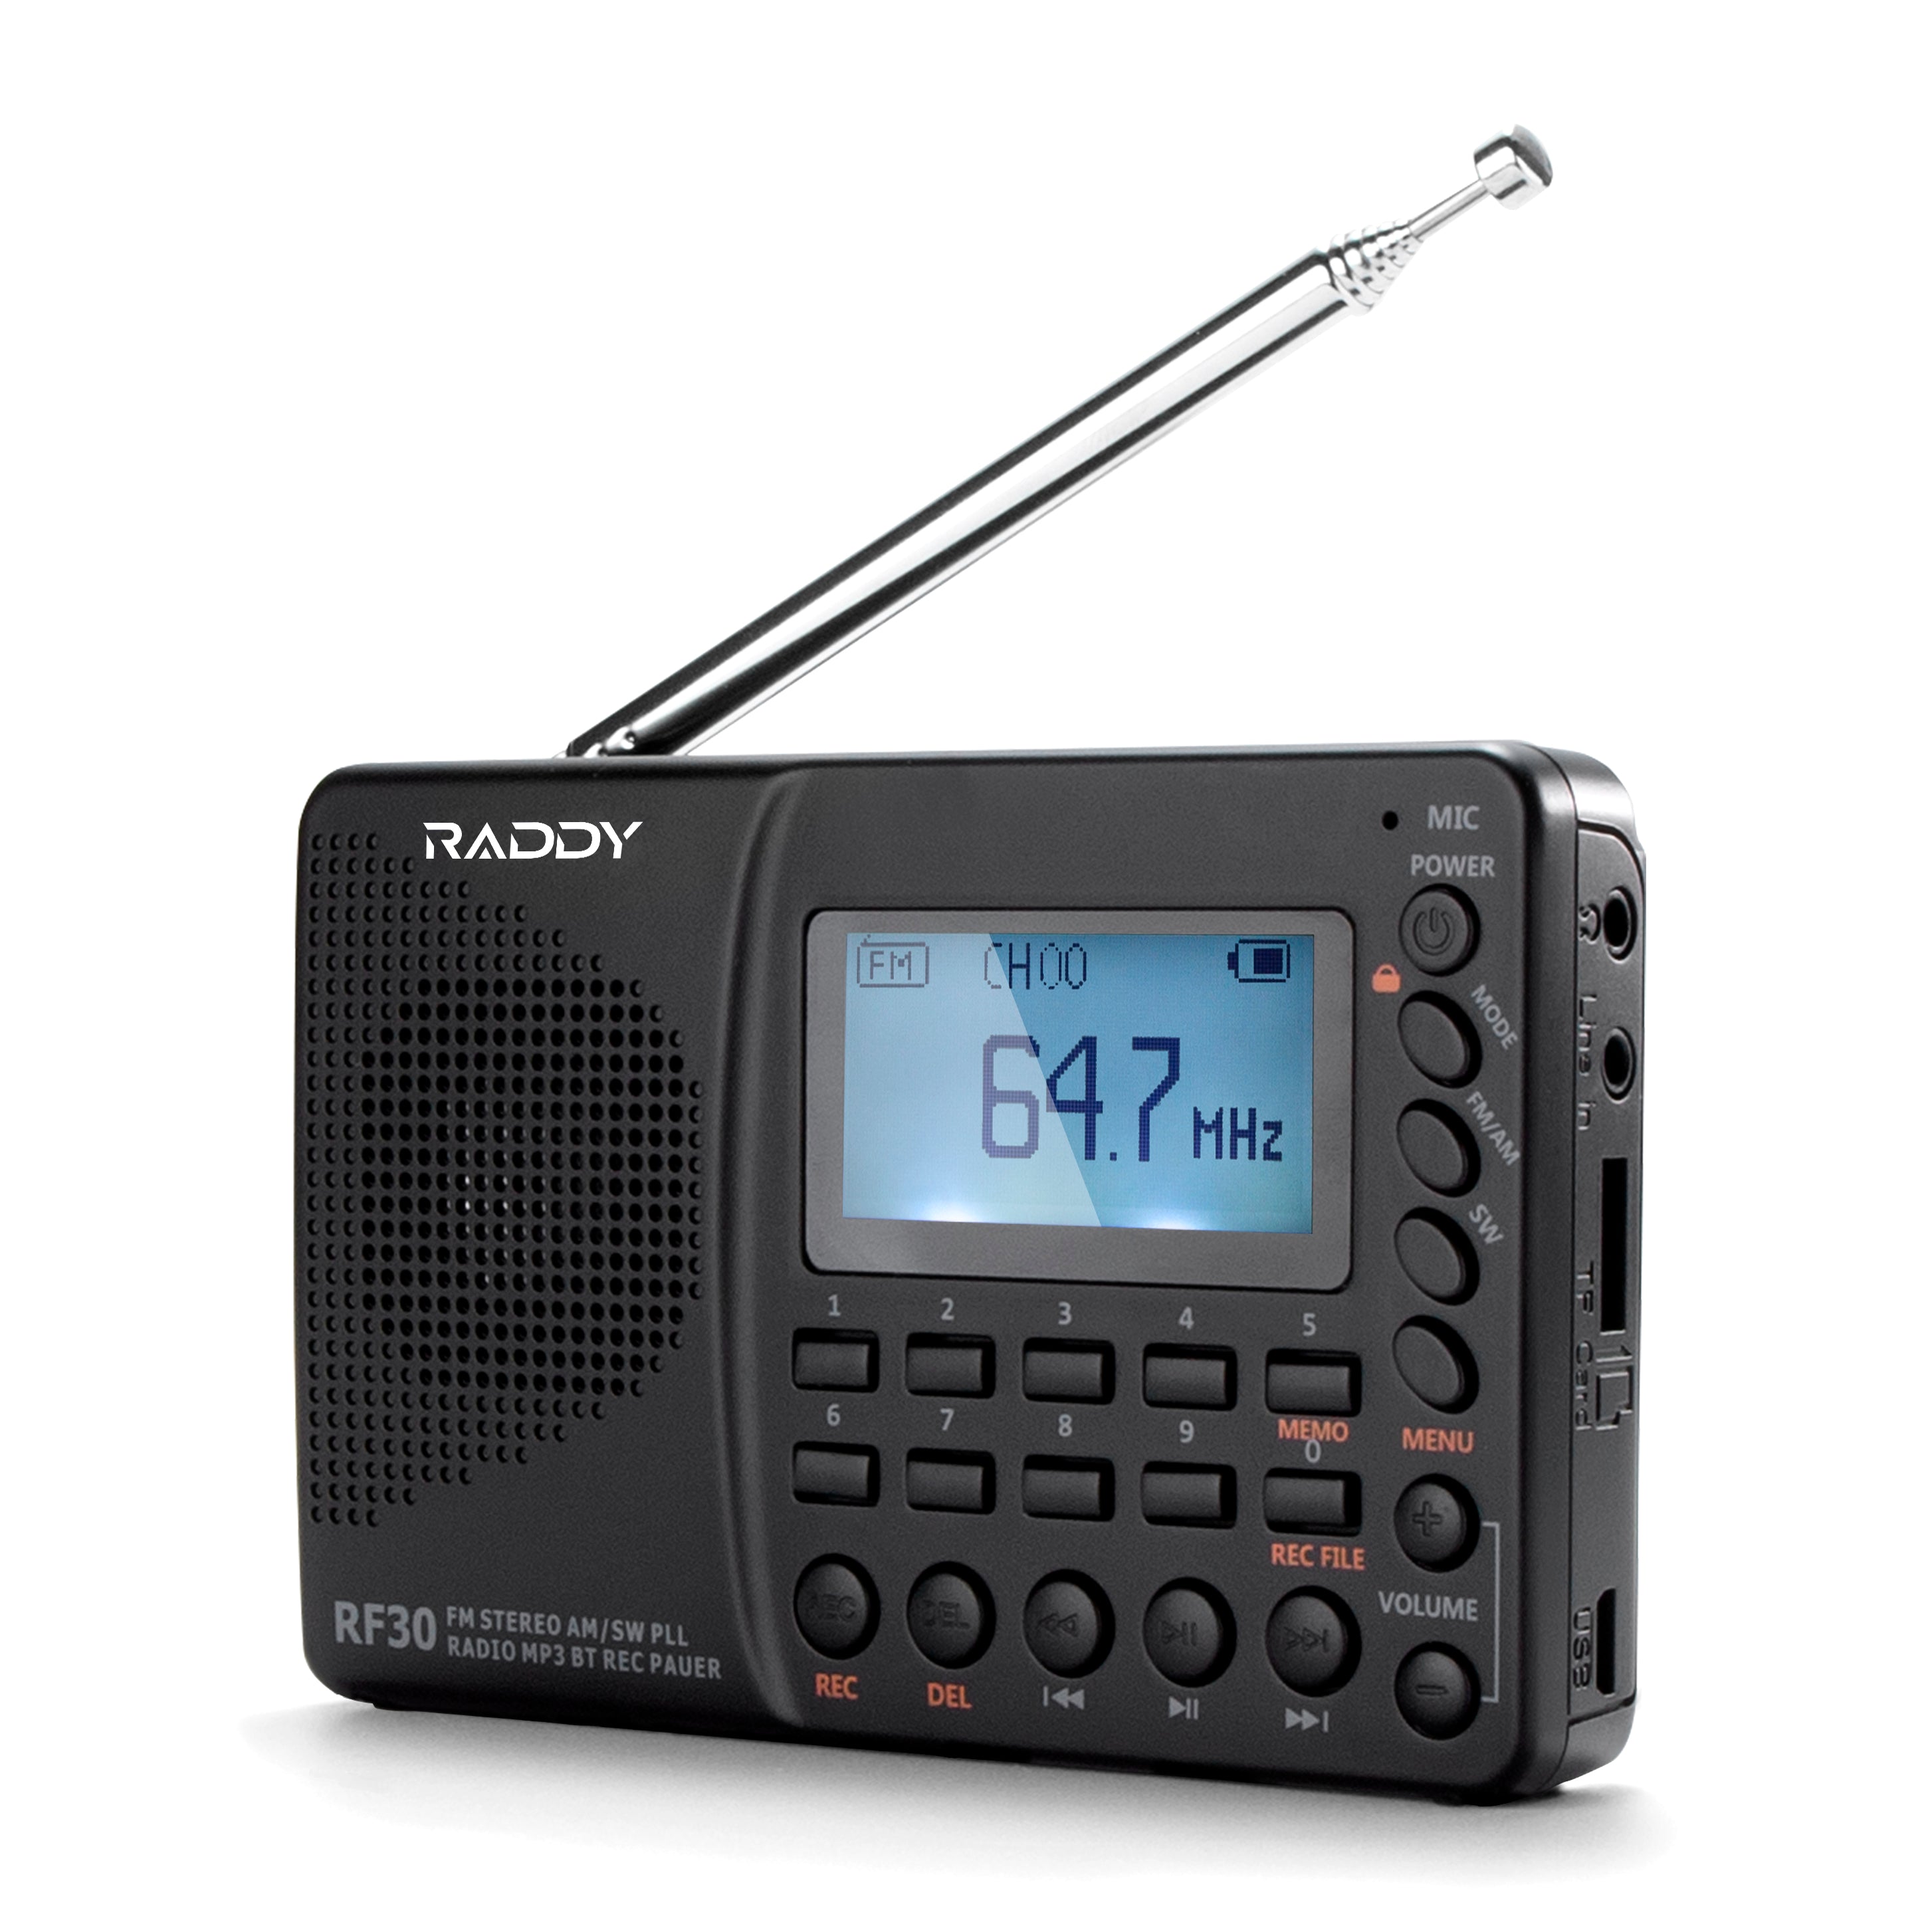 RF30 FM/AM/SW Shortwave Radio